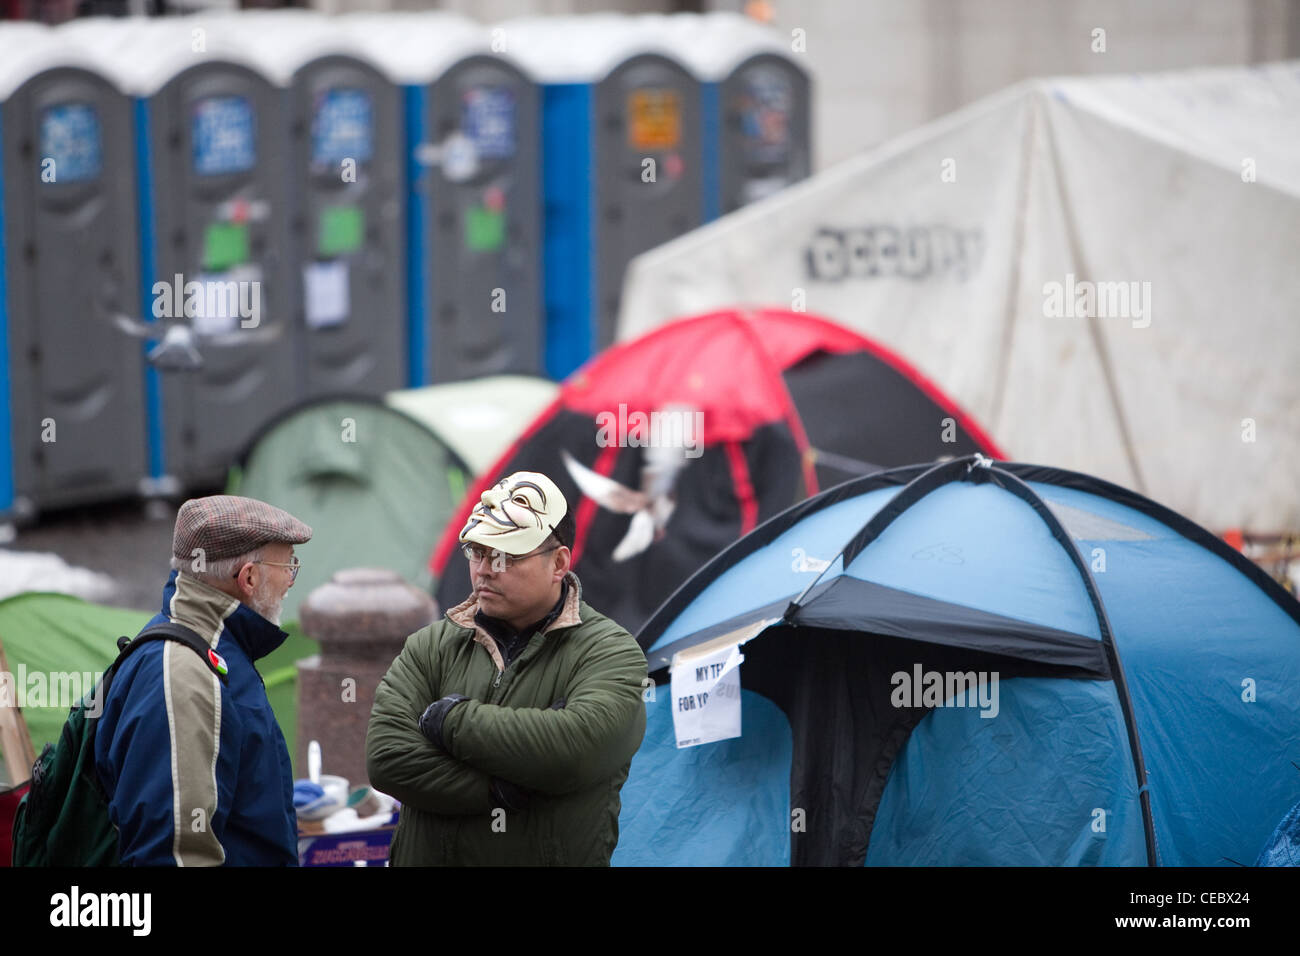 Un activiste dans un masque v pour vendetta parle à un membre du public à l'occupy London camp de St Paul's Cathedral. Banque D'Images